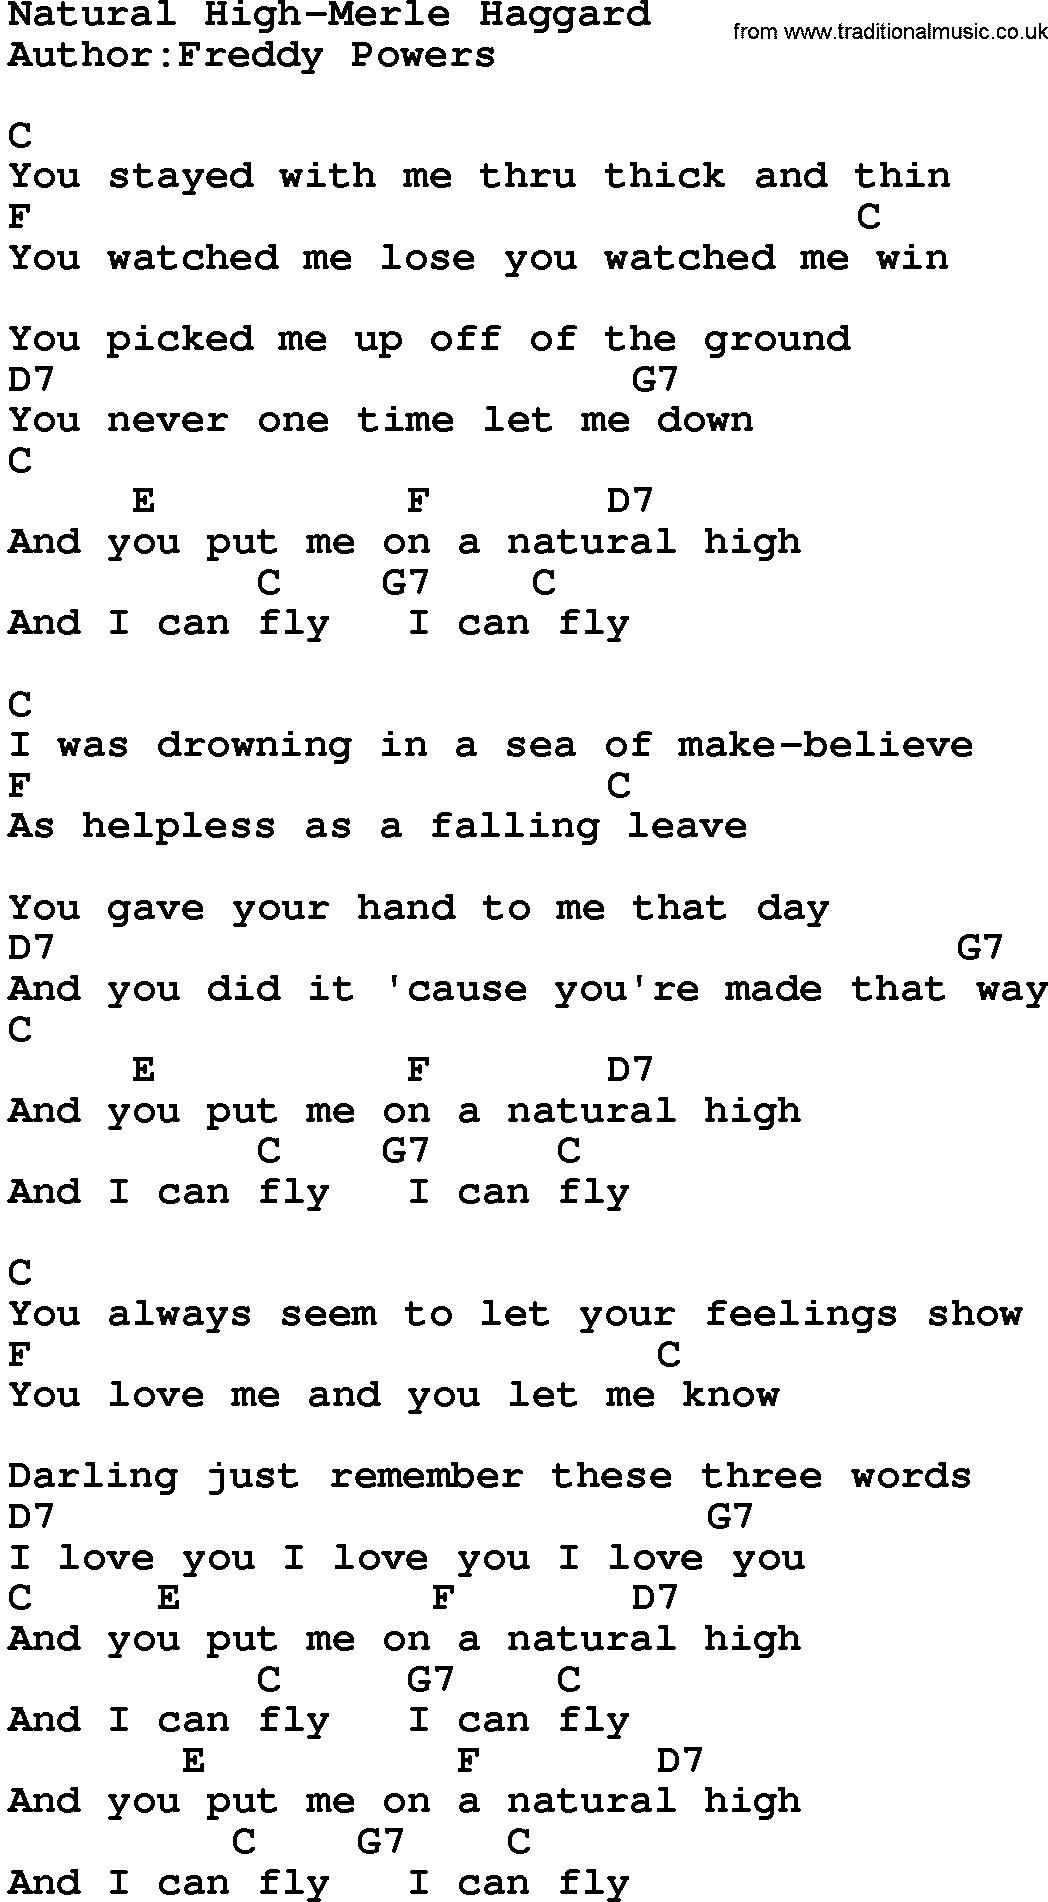 Country music song: Natural High-Merle Haggard lyrics and chords